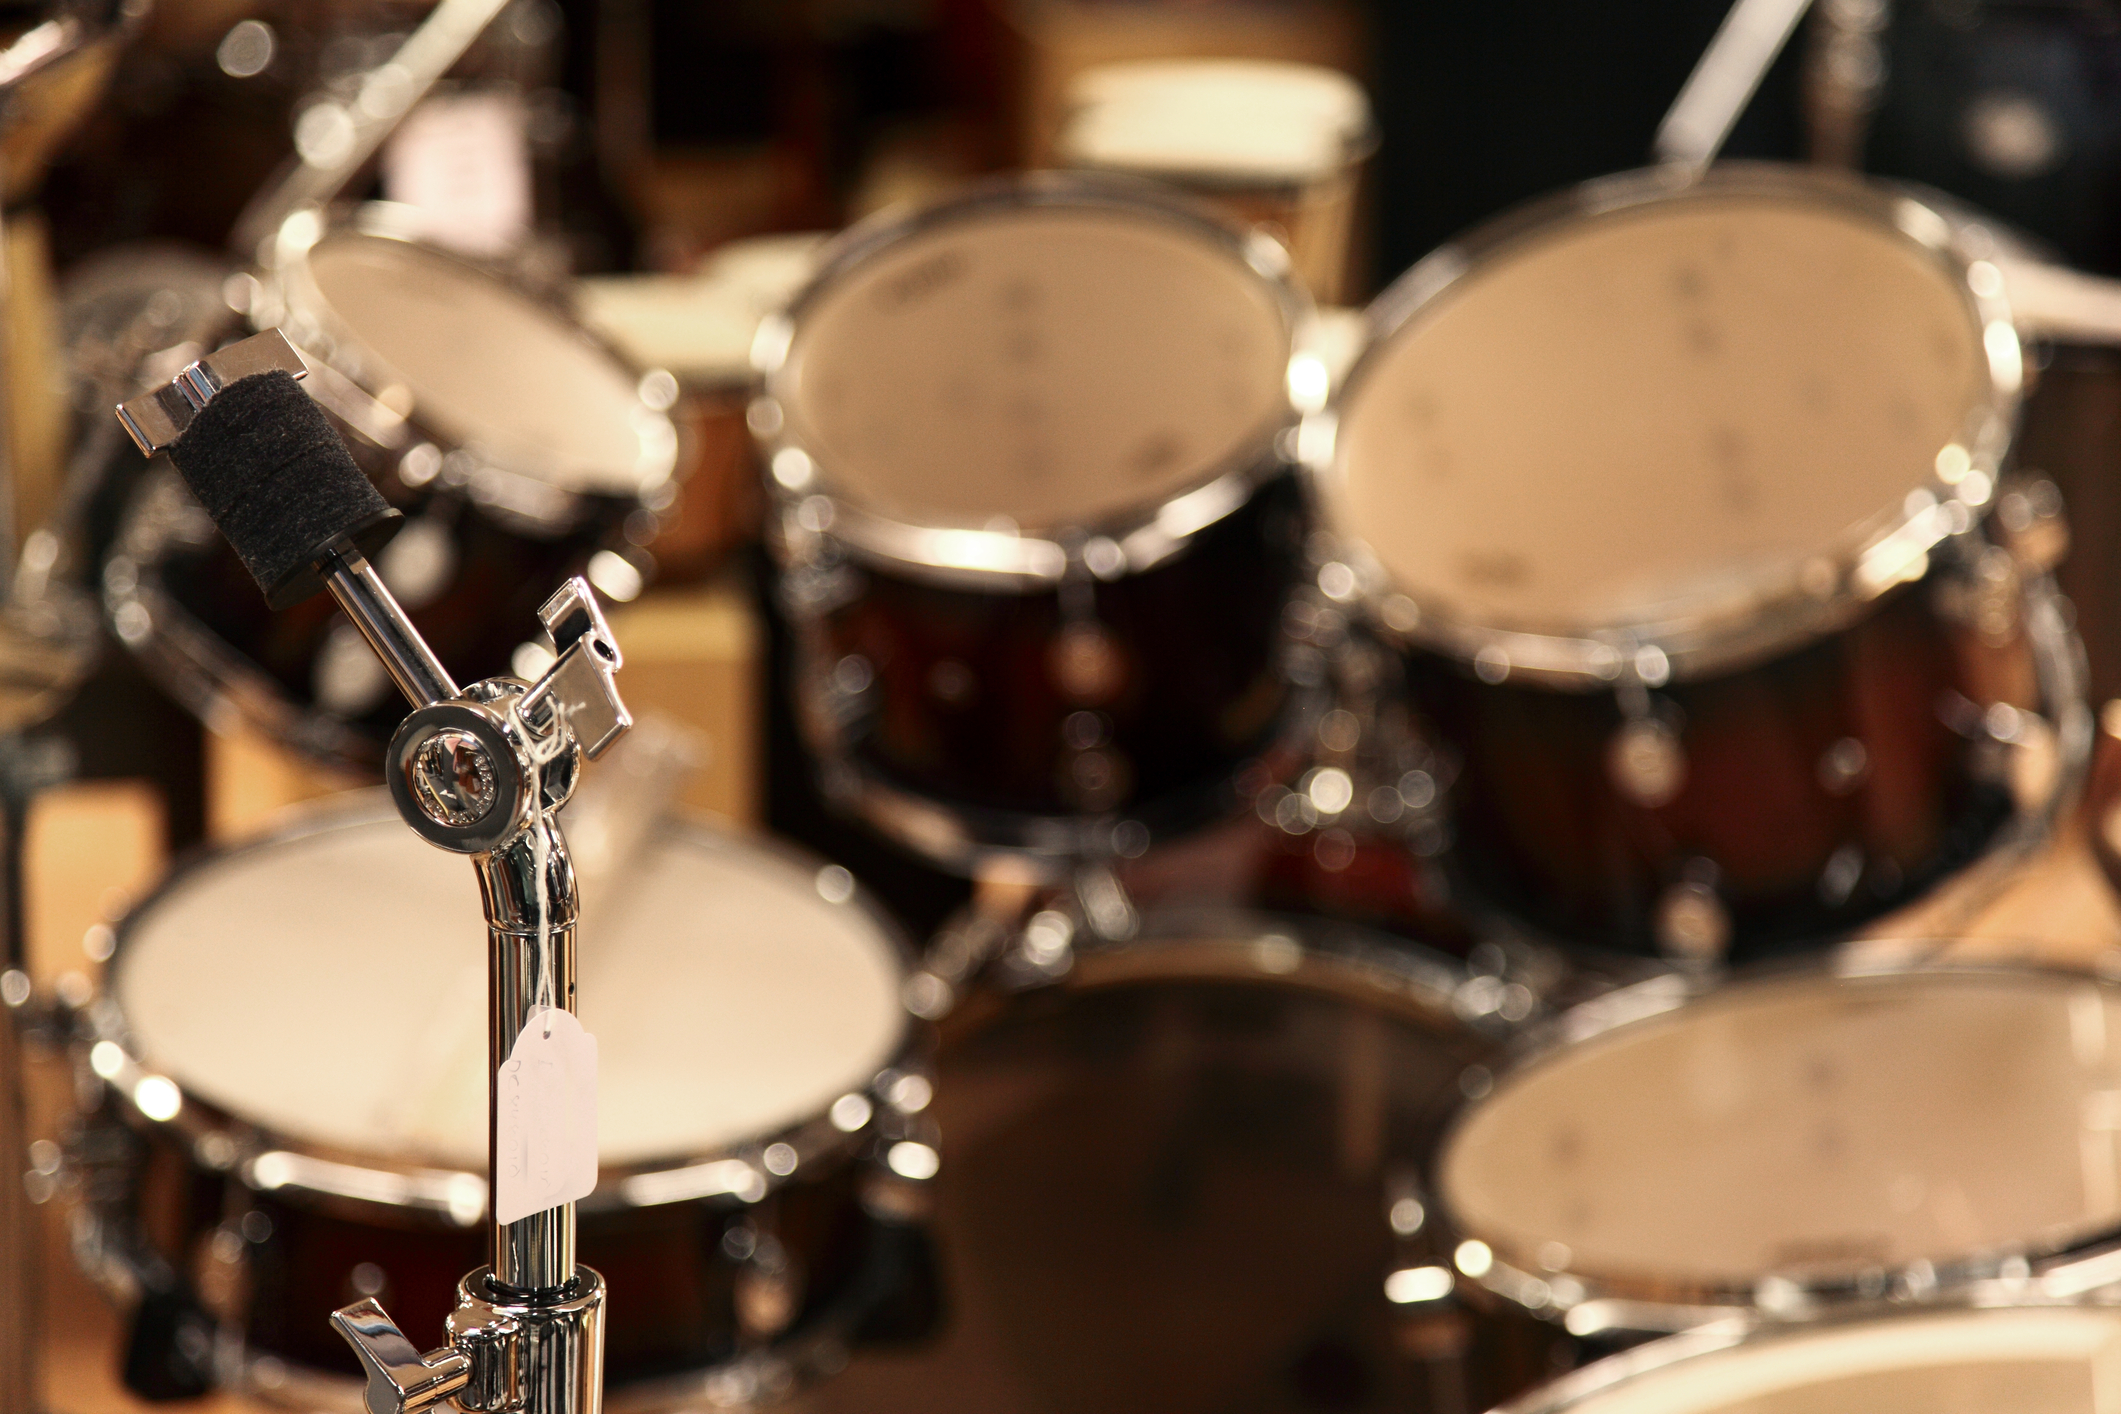 Drum Lessons in Studio City